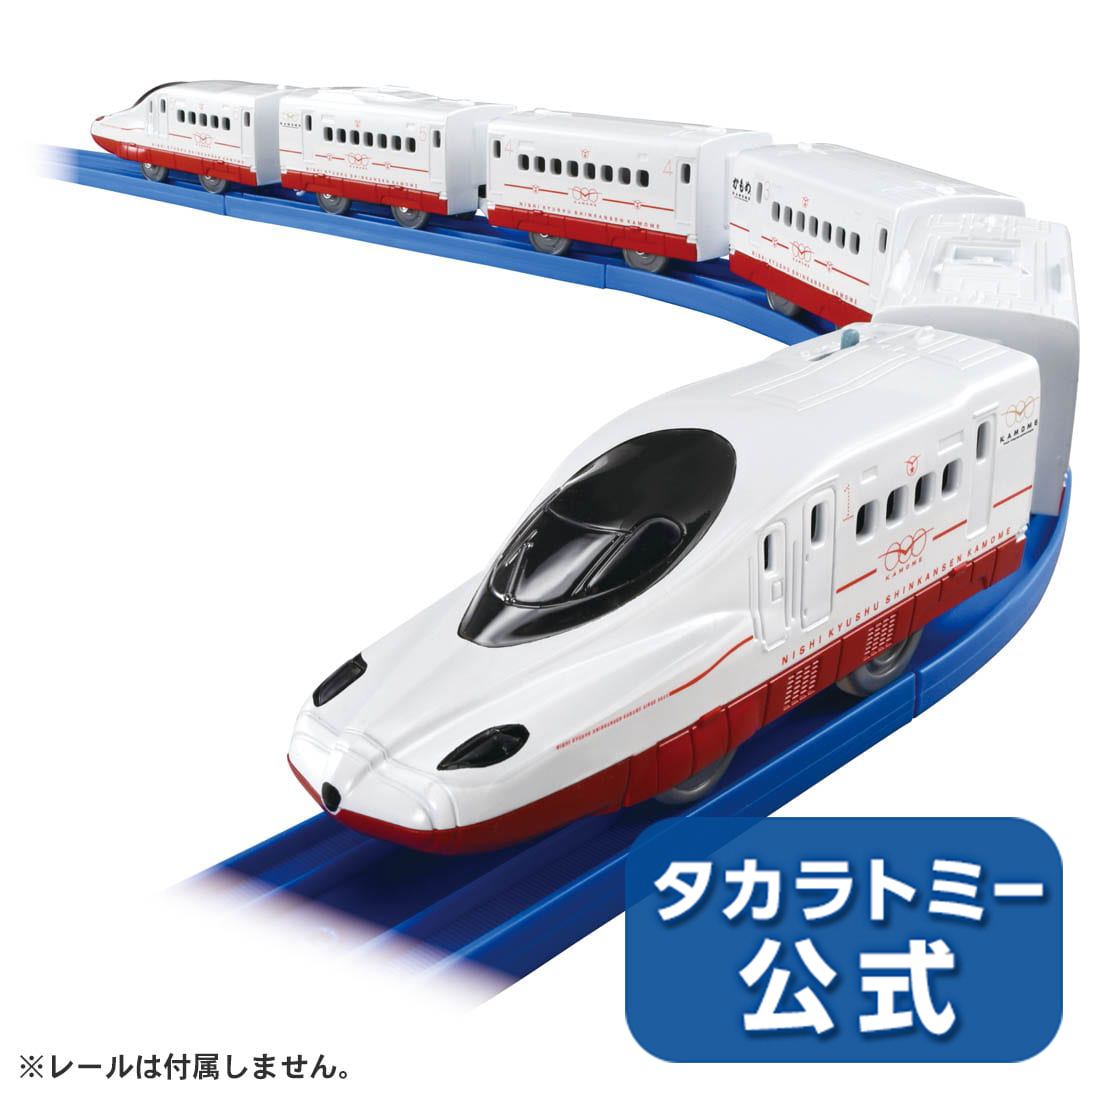 プラレール プラレール いっぱいつなごう 西九州新幹線かもめ タカラトミー 電車 新幹線 列車 乗り物 おもちゃ こども 子供 ギフト プレゼント